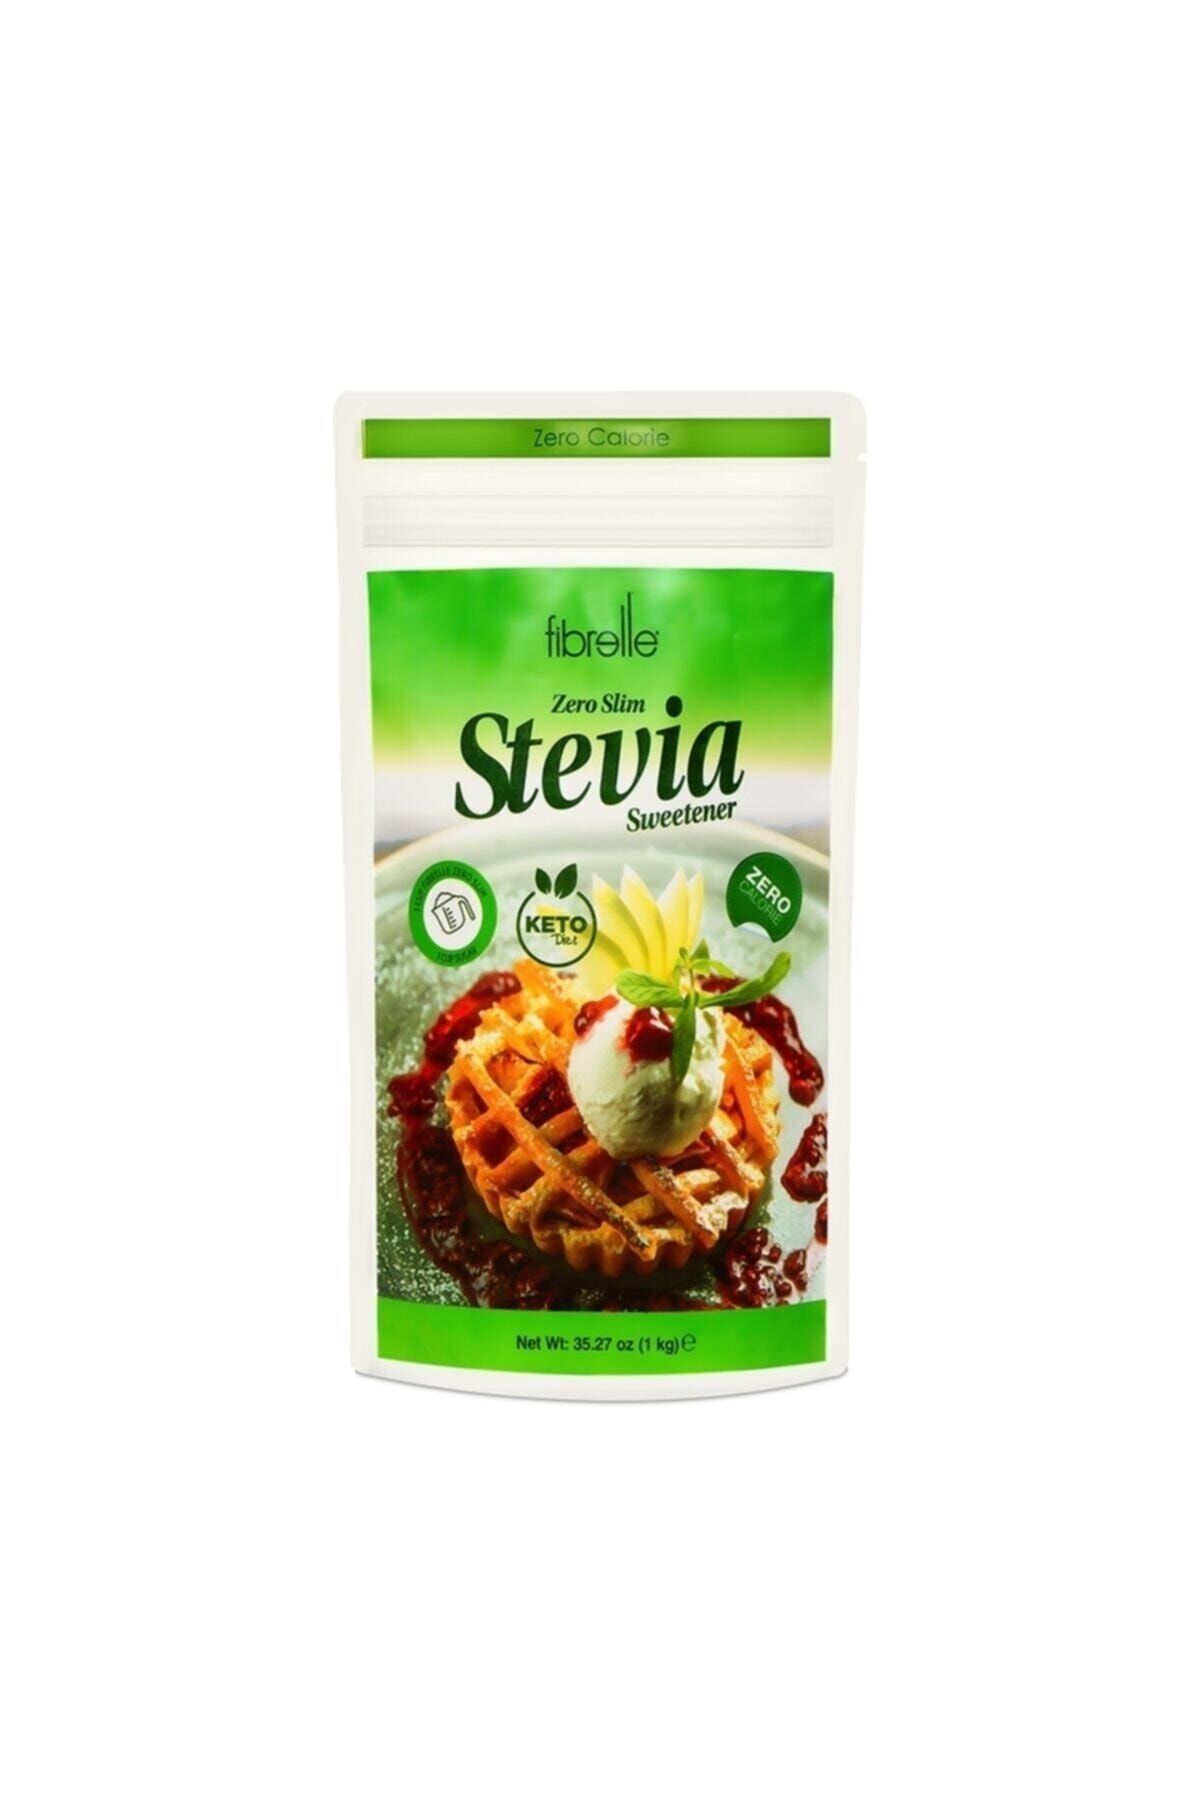 Fibrelle Zero Slim Stevia Lı Tatlandırıcı 1 Kg Keto /ketojenik / Vegan Diyete Uygundur.